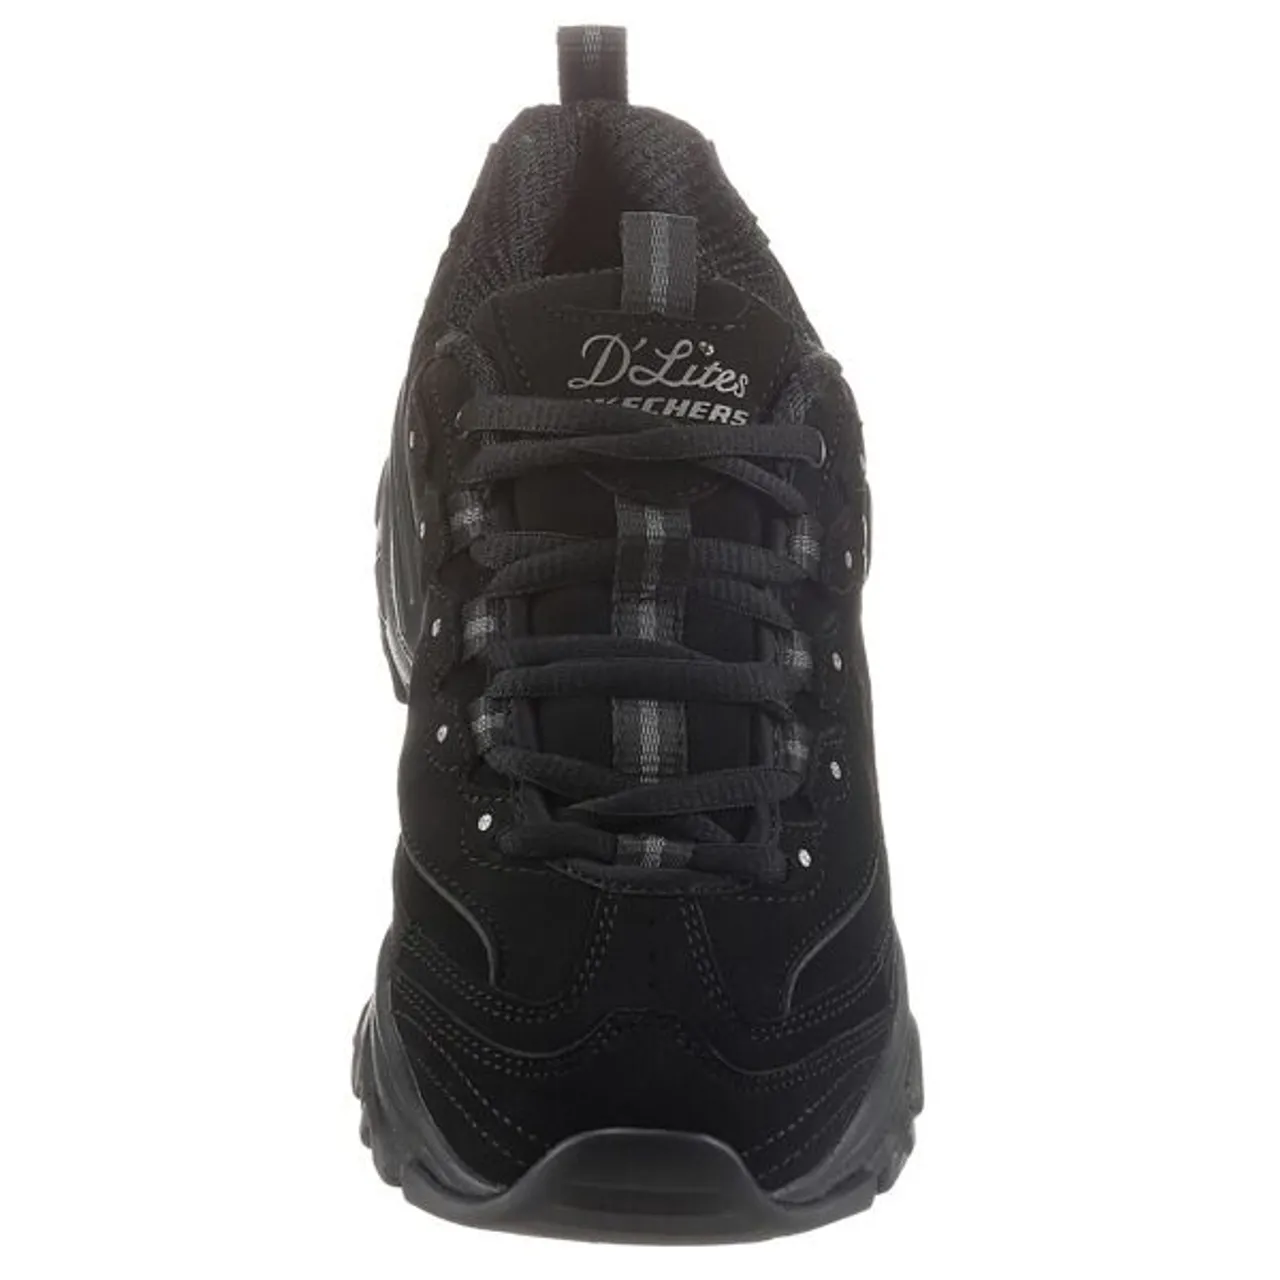 Sneaker SKECHERS "D'LITES PLAY ON" Gr. 35, schwarz Damen Schuhe Sneaker mit Air Cooled Memory Foam, Freizeitschuh, Halbschuh, Schnürschuh